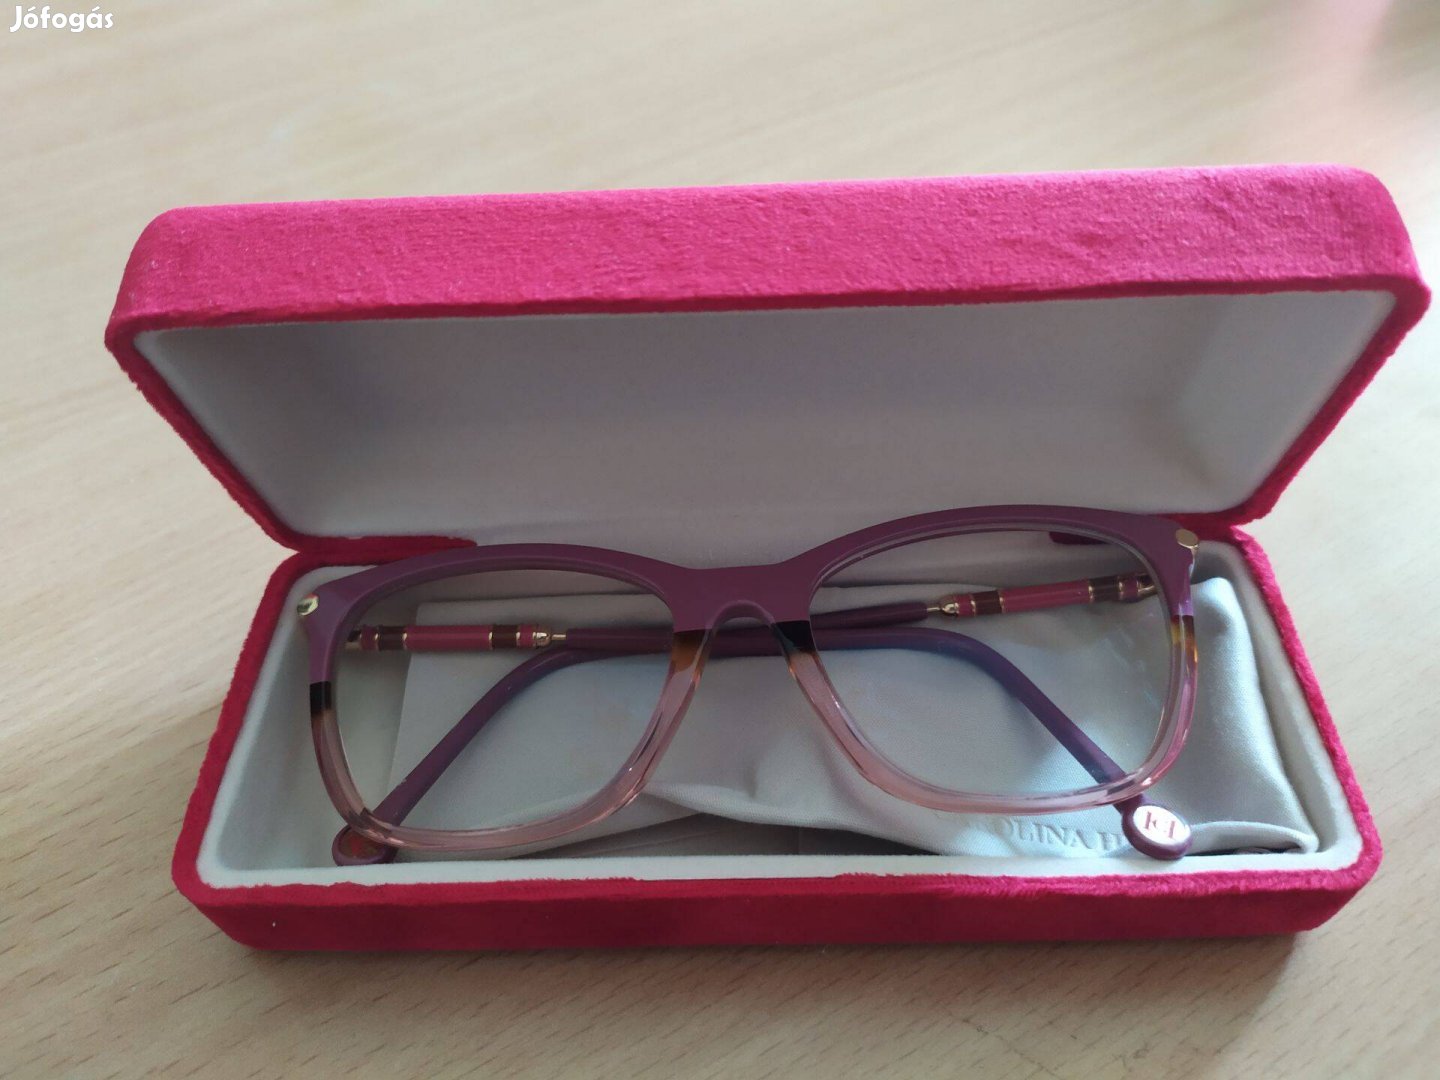 Carolina Herrera szemüveg hibátlan és új eladó üzletben 60 e Ft az ára